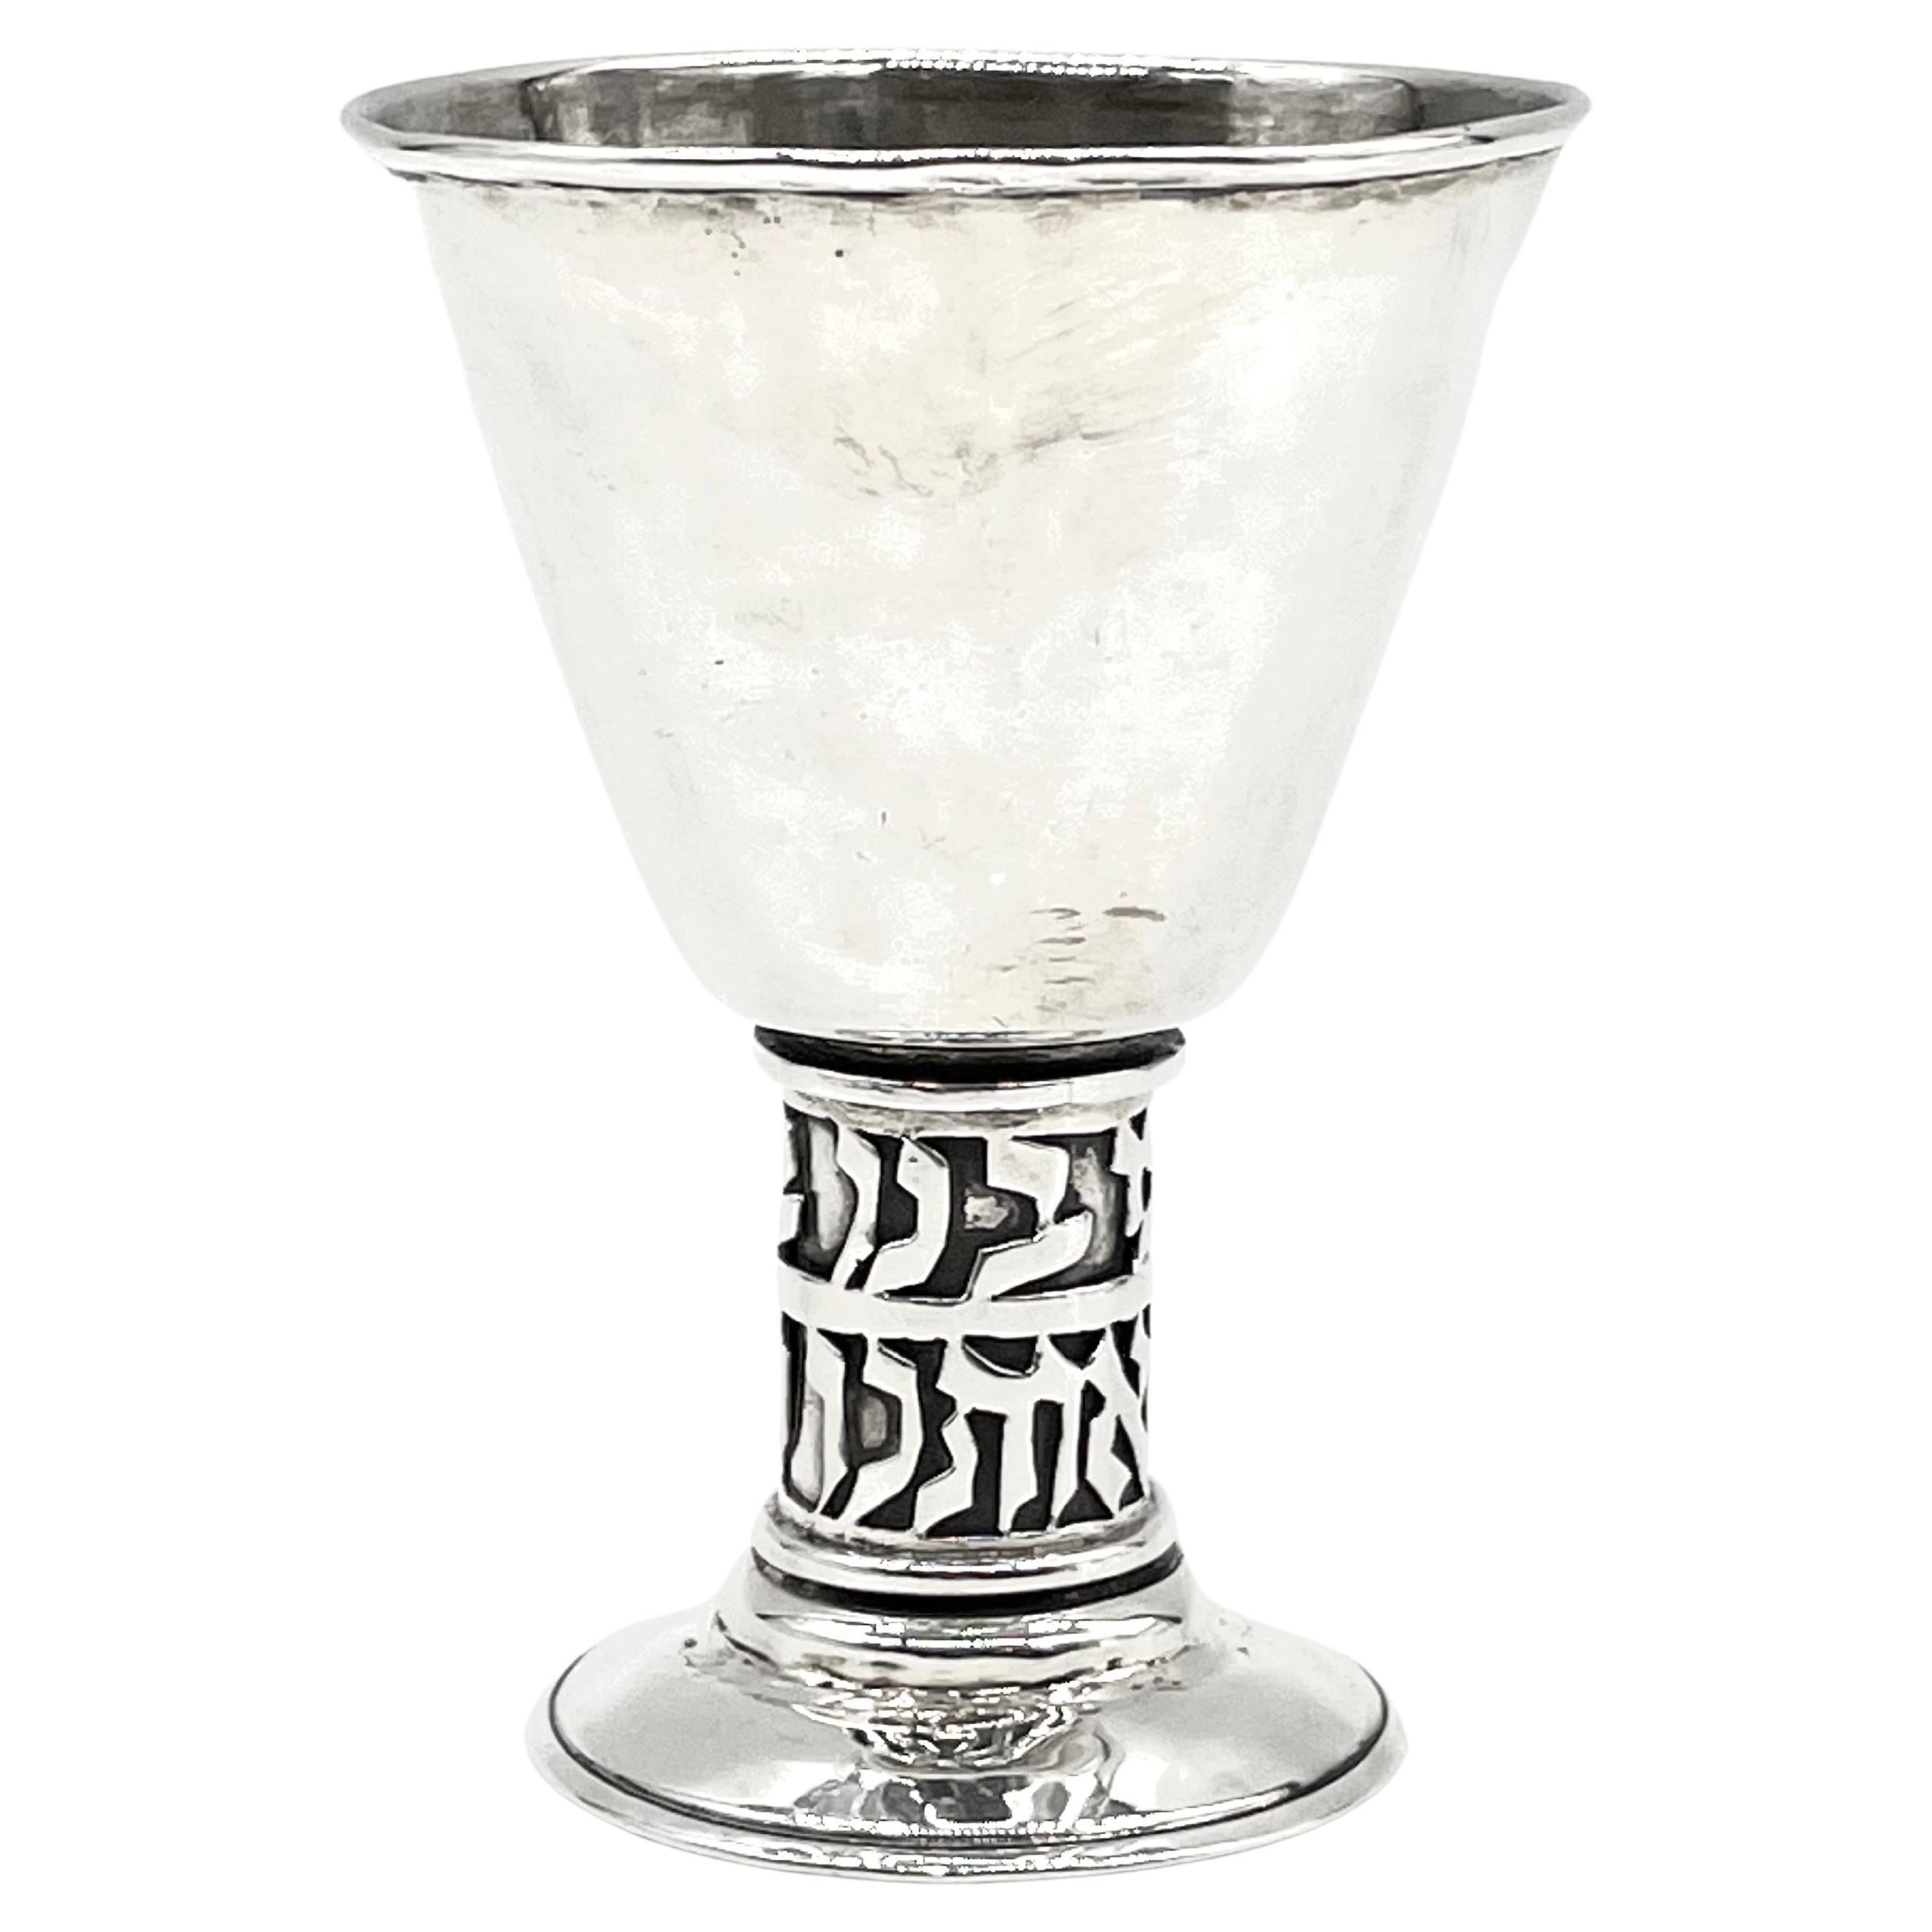 Mid-20th Century Israeli Silver Kiddush Goblet by Hans Ettlinger For Sale